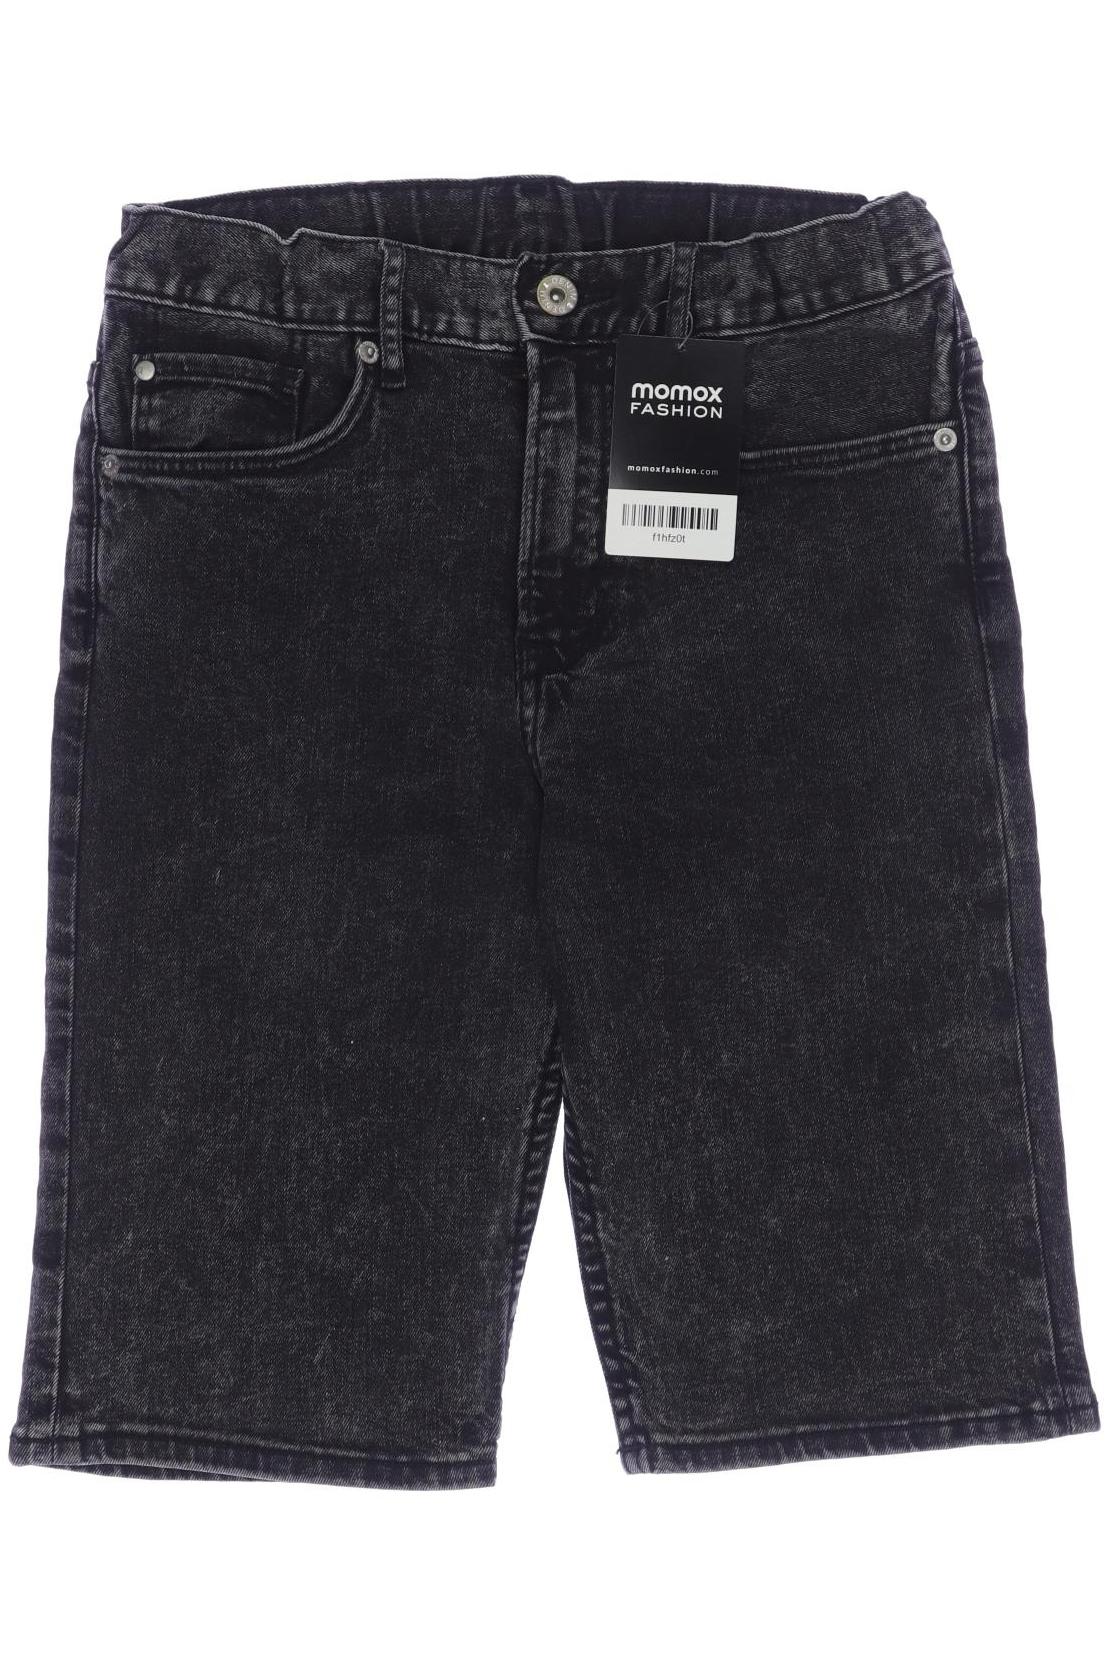 H&M Jungen Shorts, schwarz von H&M